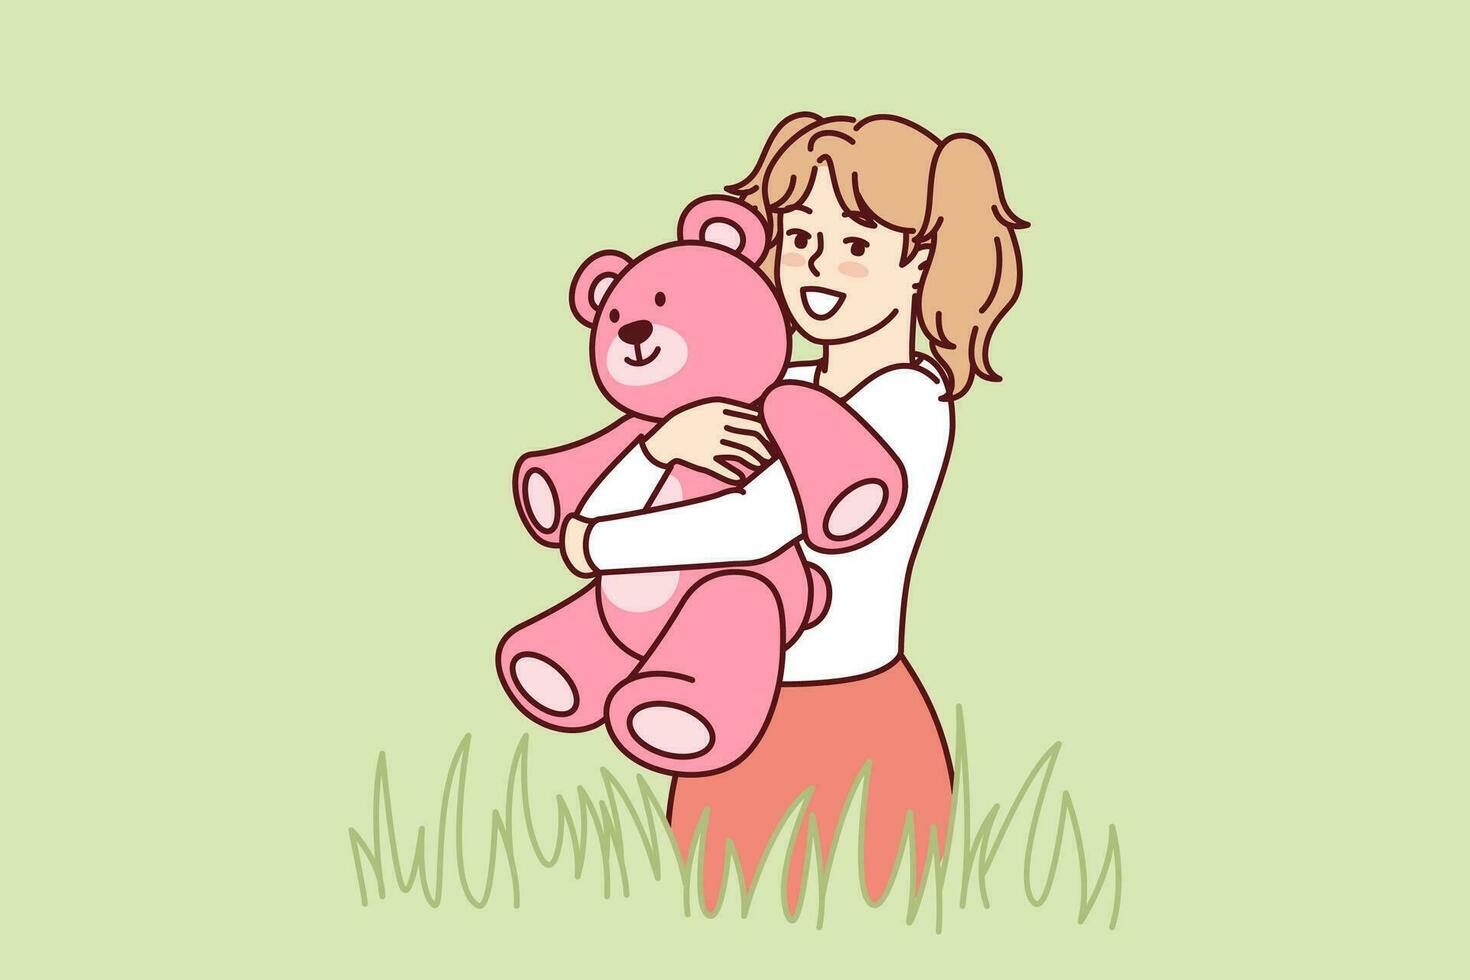 gelukkig weinig meisje met teddy beer in handen staat in weide tussen hoog gras en looks Bij scherm. kind met glimlach knuffels geliefde speelgoed- beer, gepresenteerd voor verjaardag, gedurende zomer wandelen vector